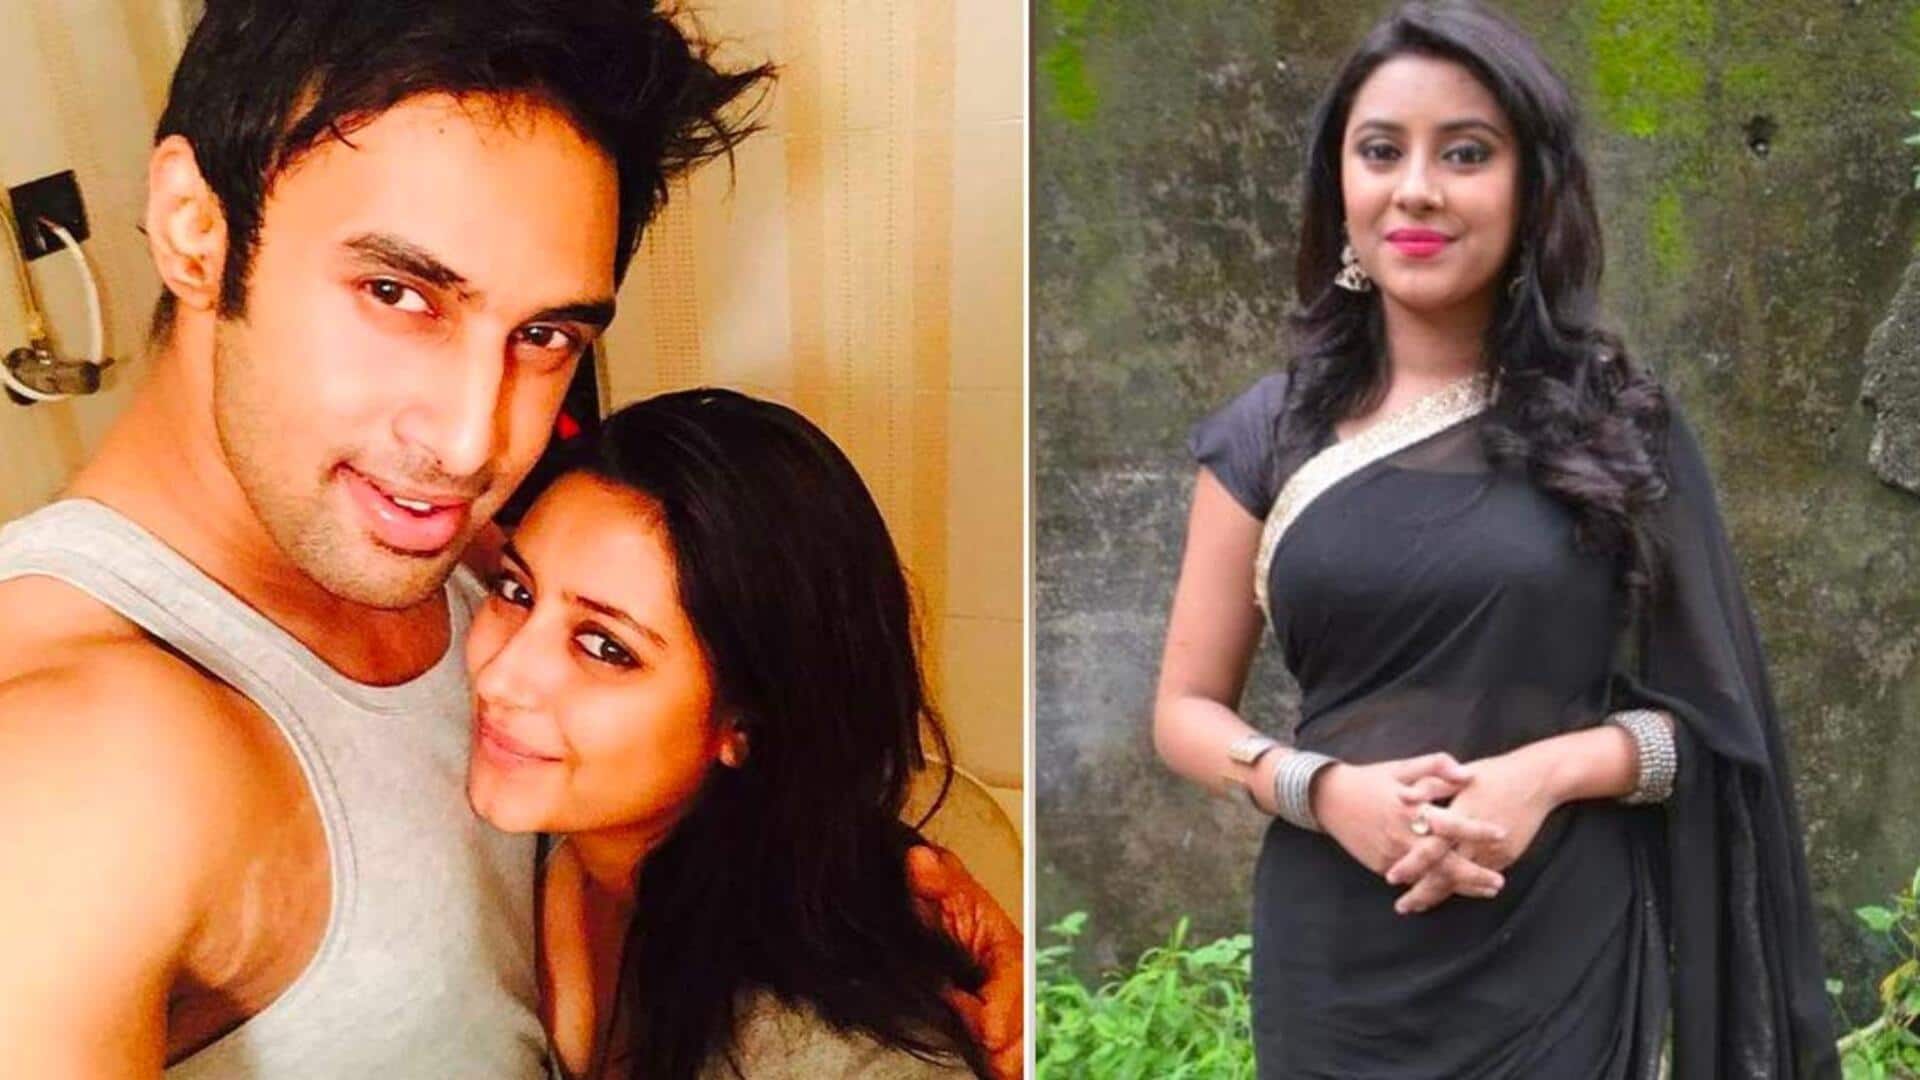 Late Pratyusha Banerjee's boyfriend says he's ready for trial